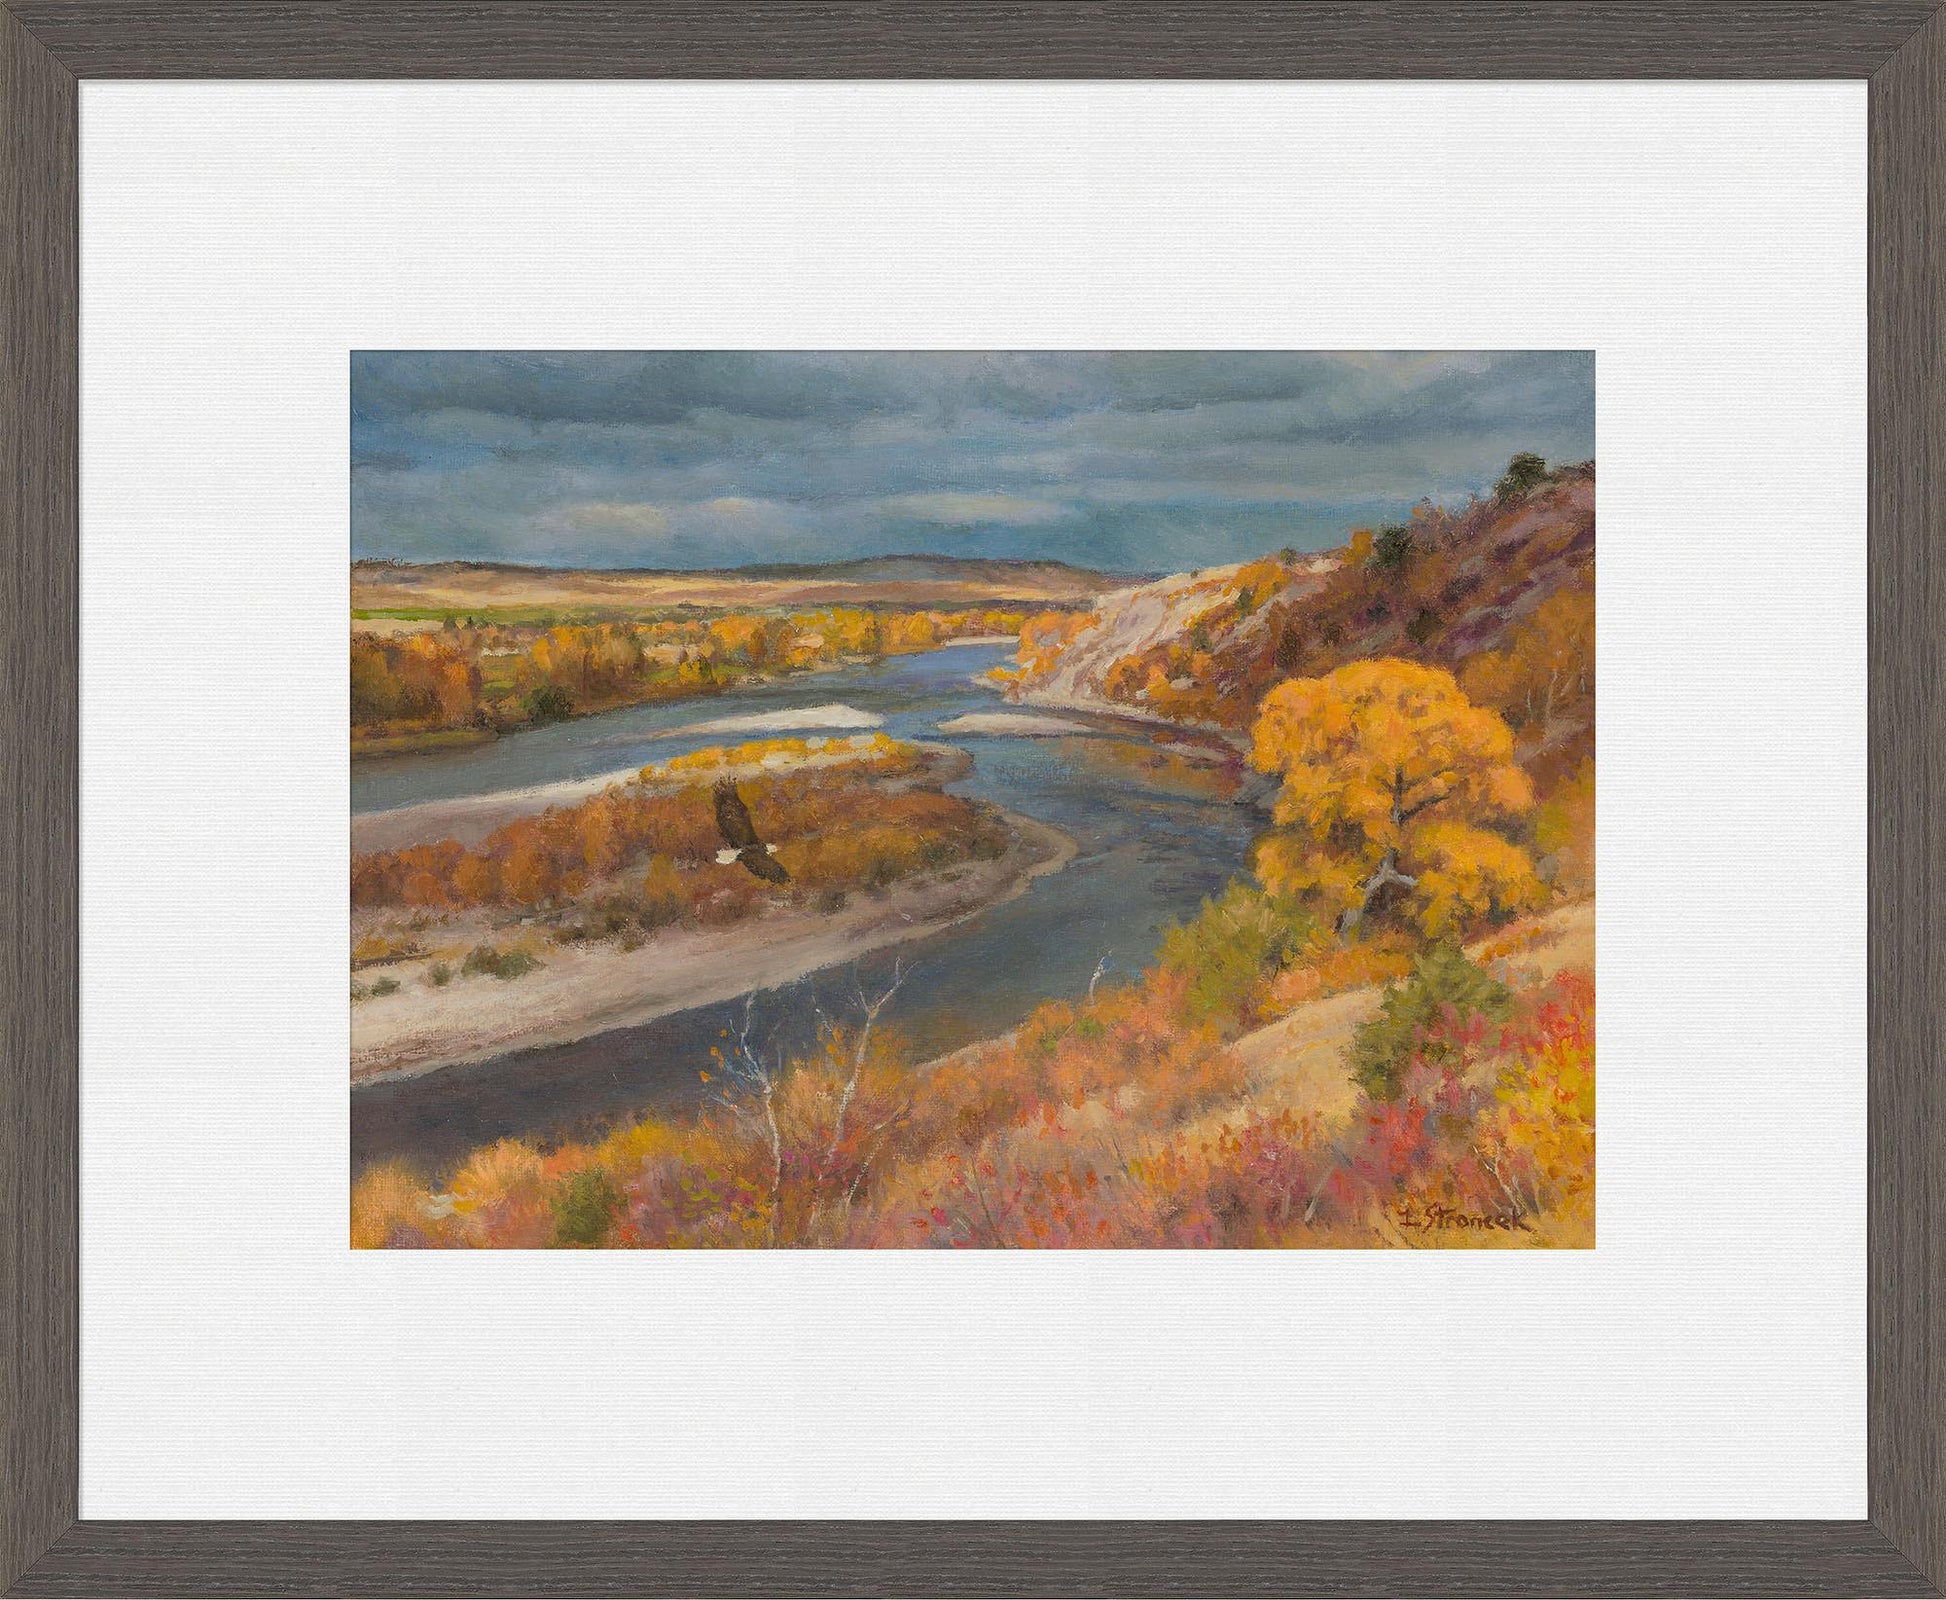 the-river-in-a-golden-mood-framed-print-lee-stroncek-F838650089C.jpg